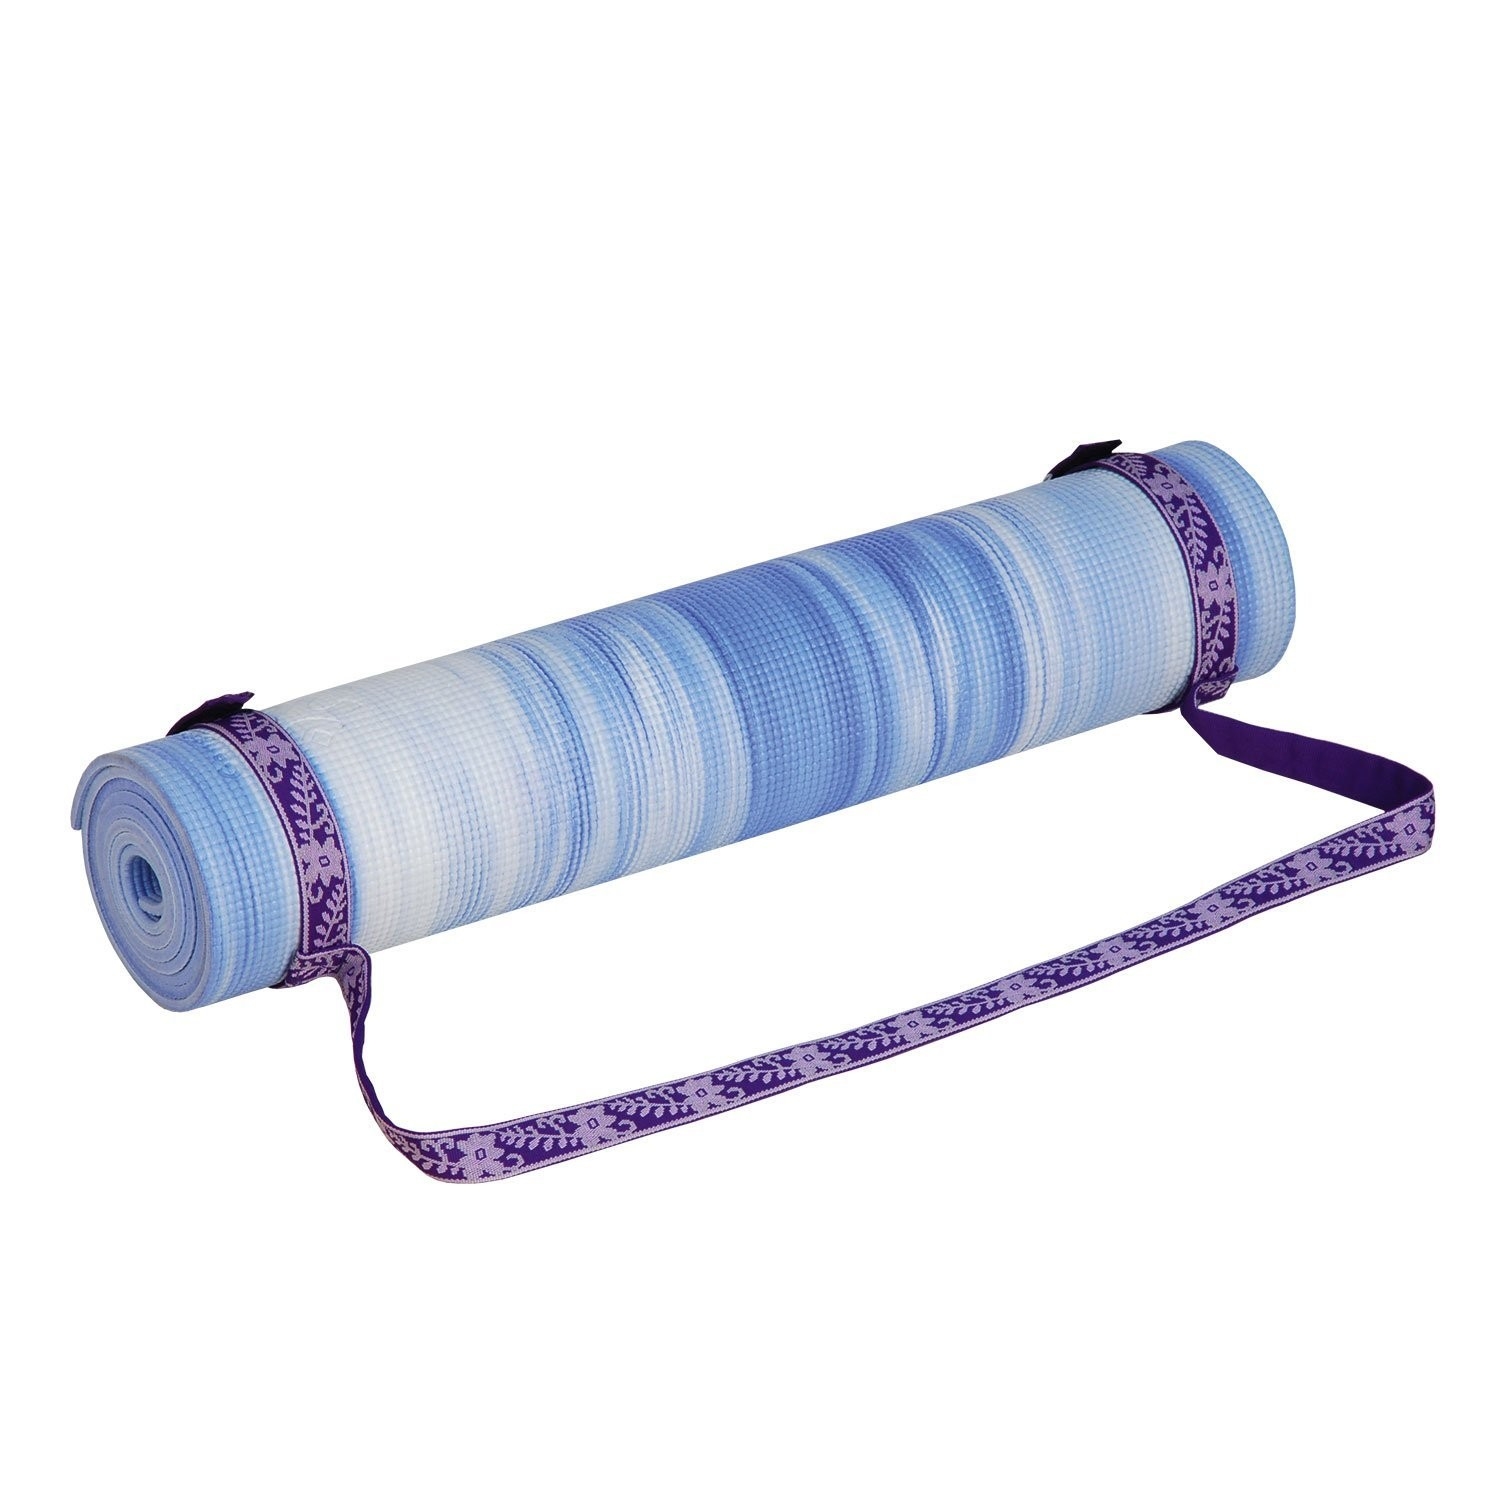 Cinghia Strap con tracolla porta tappetino Yoga